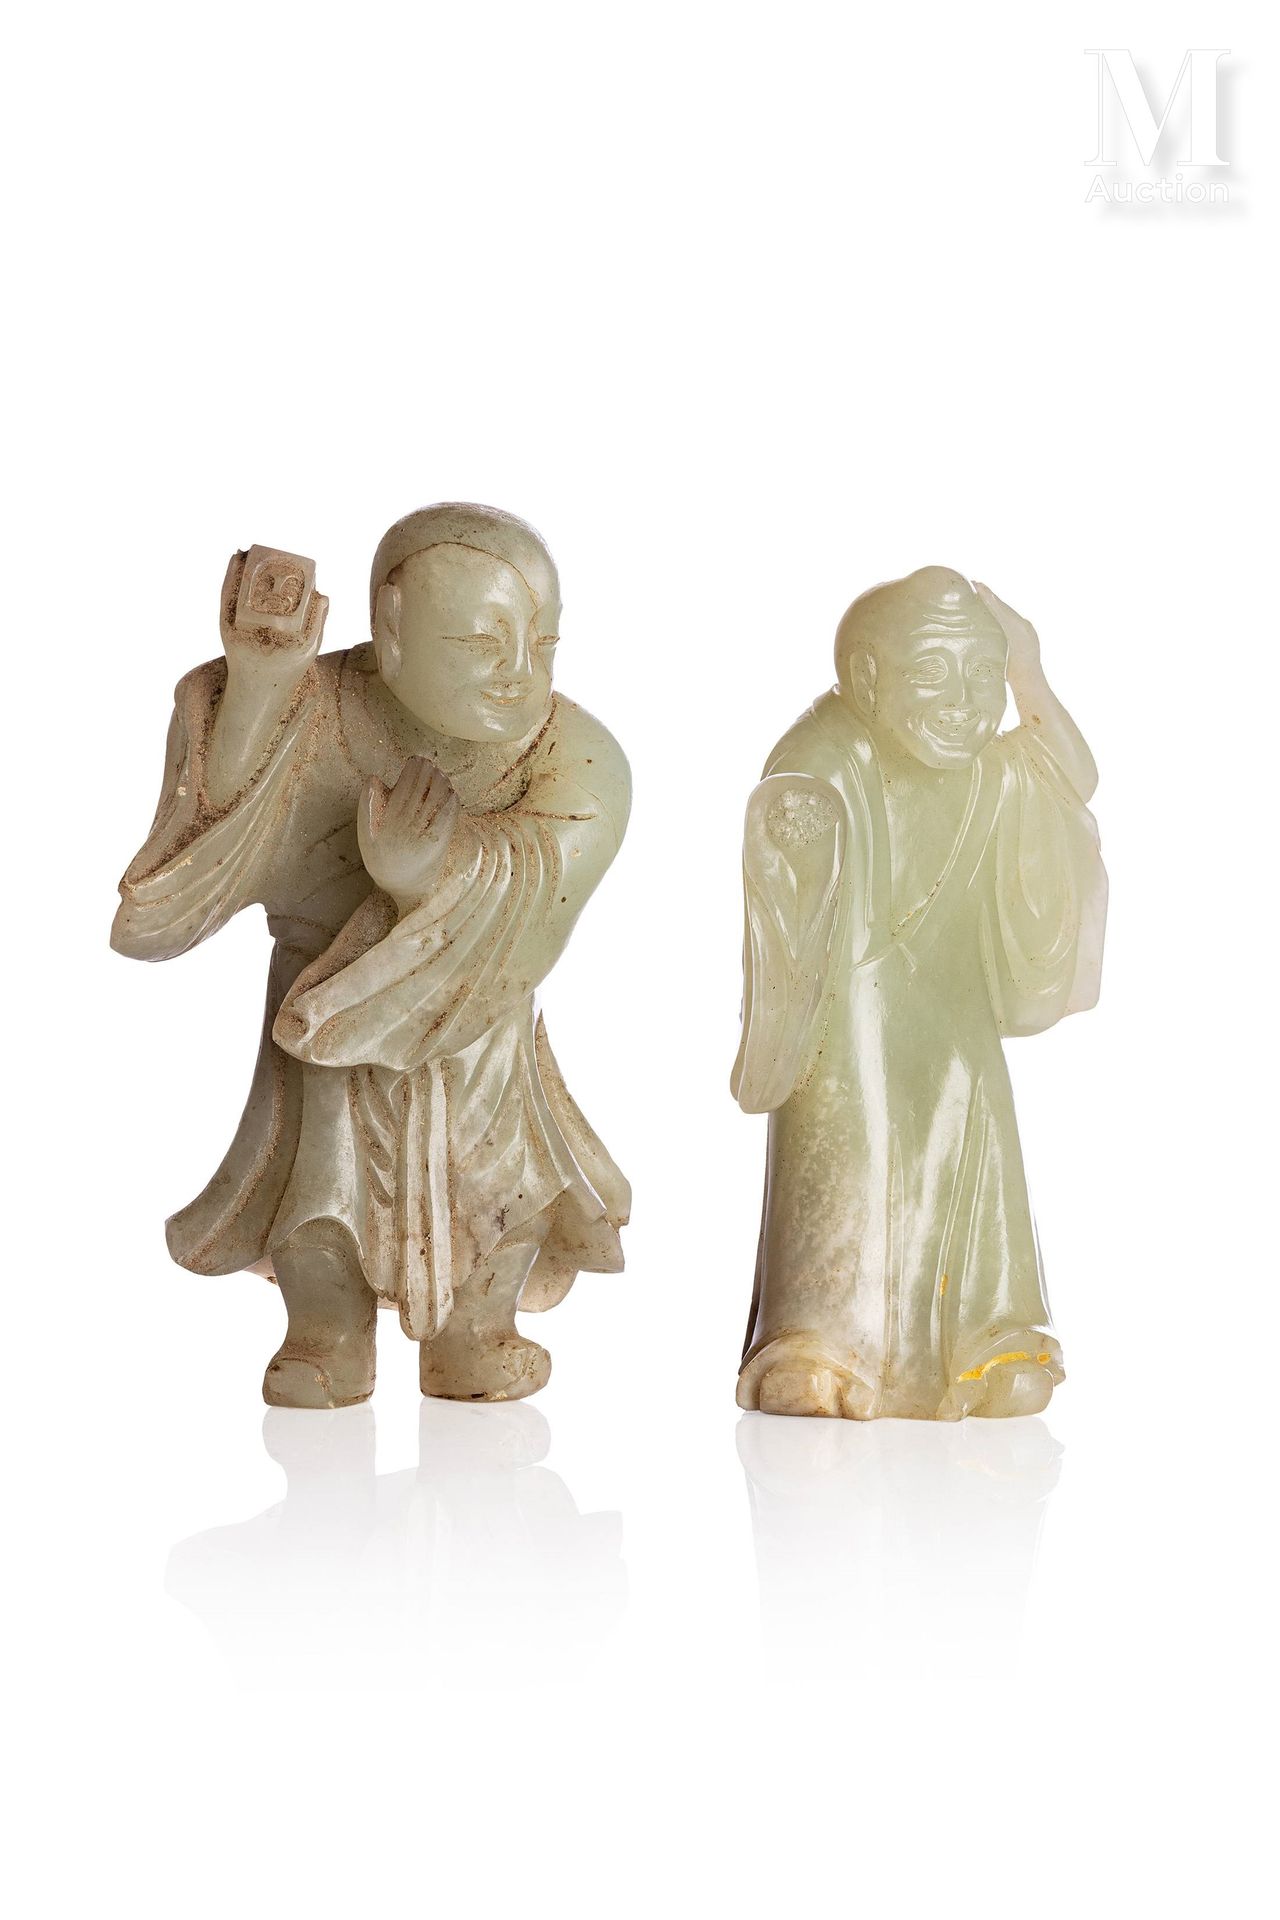 CHINE, XVIIIe SIÈCLE 
两件青花瓷玉石雕像，造型为两个人物。









高度：9和9.5厘米









其中一个人物的手臂不&hellip;